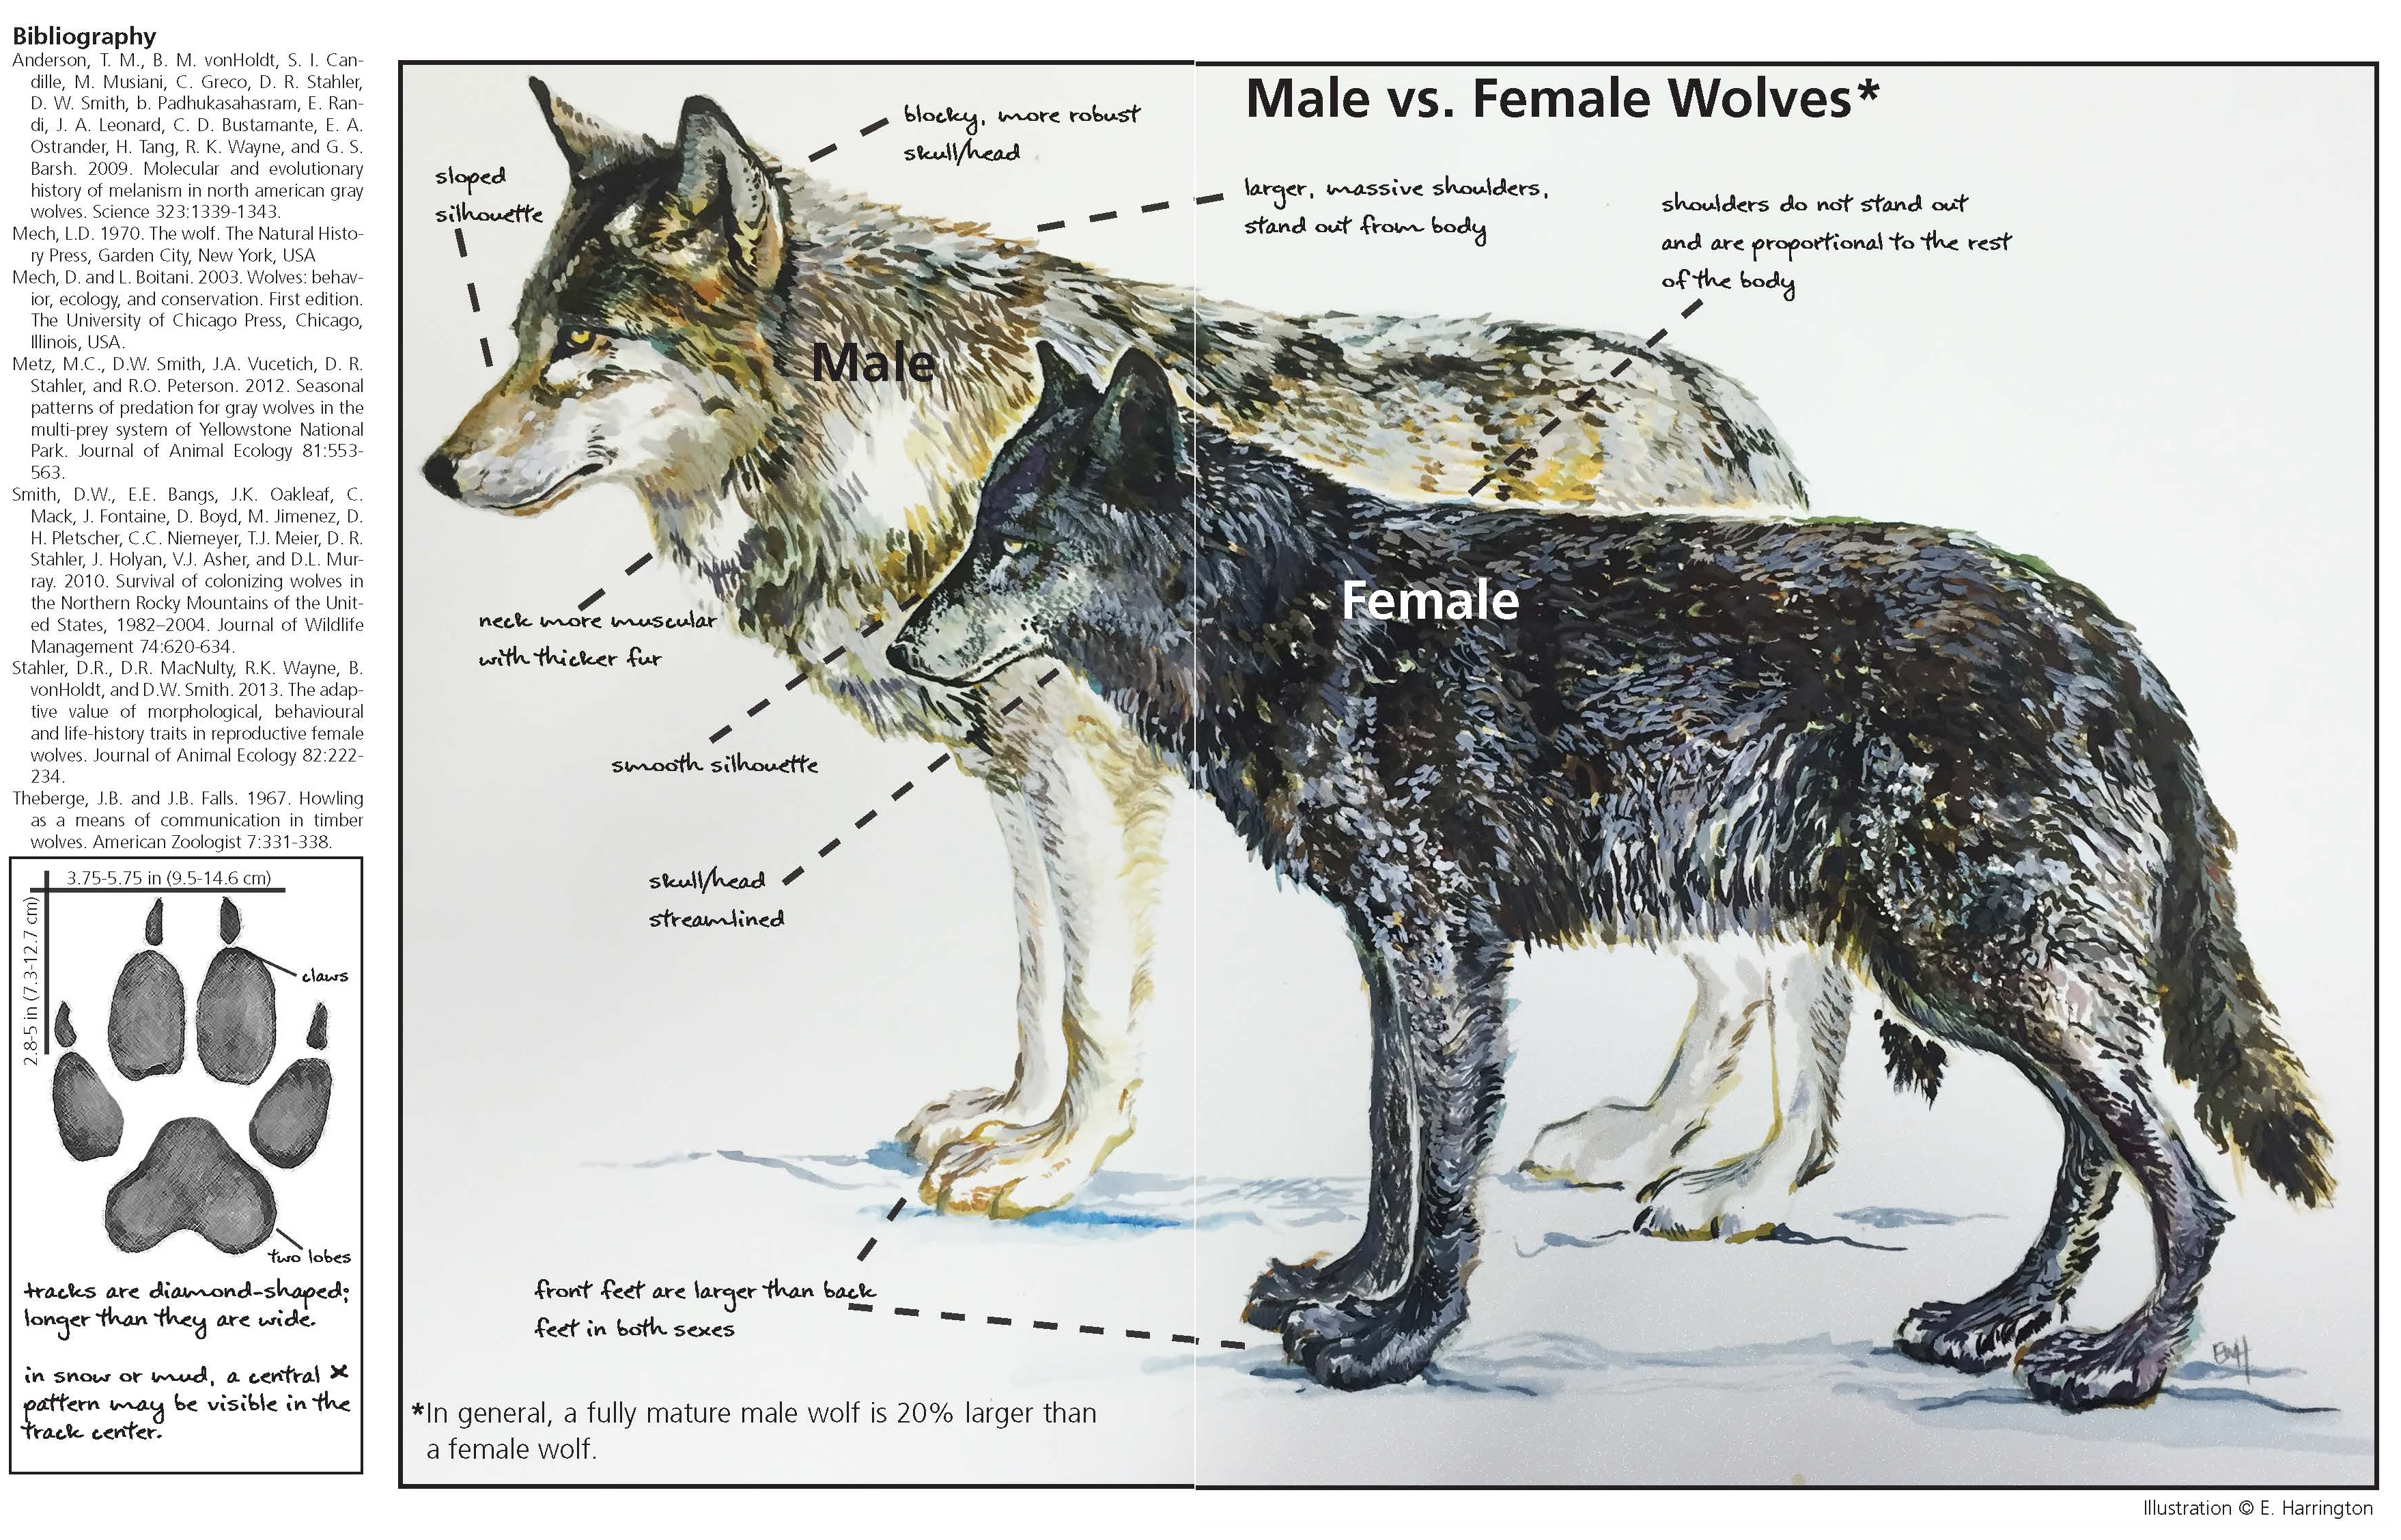 timber wolf size chart